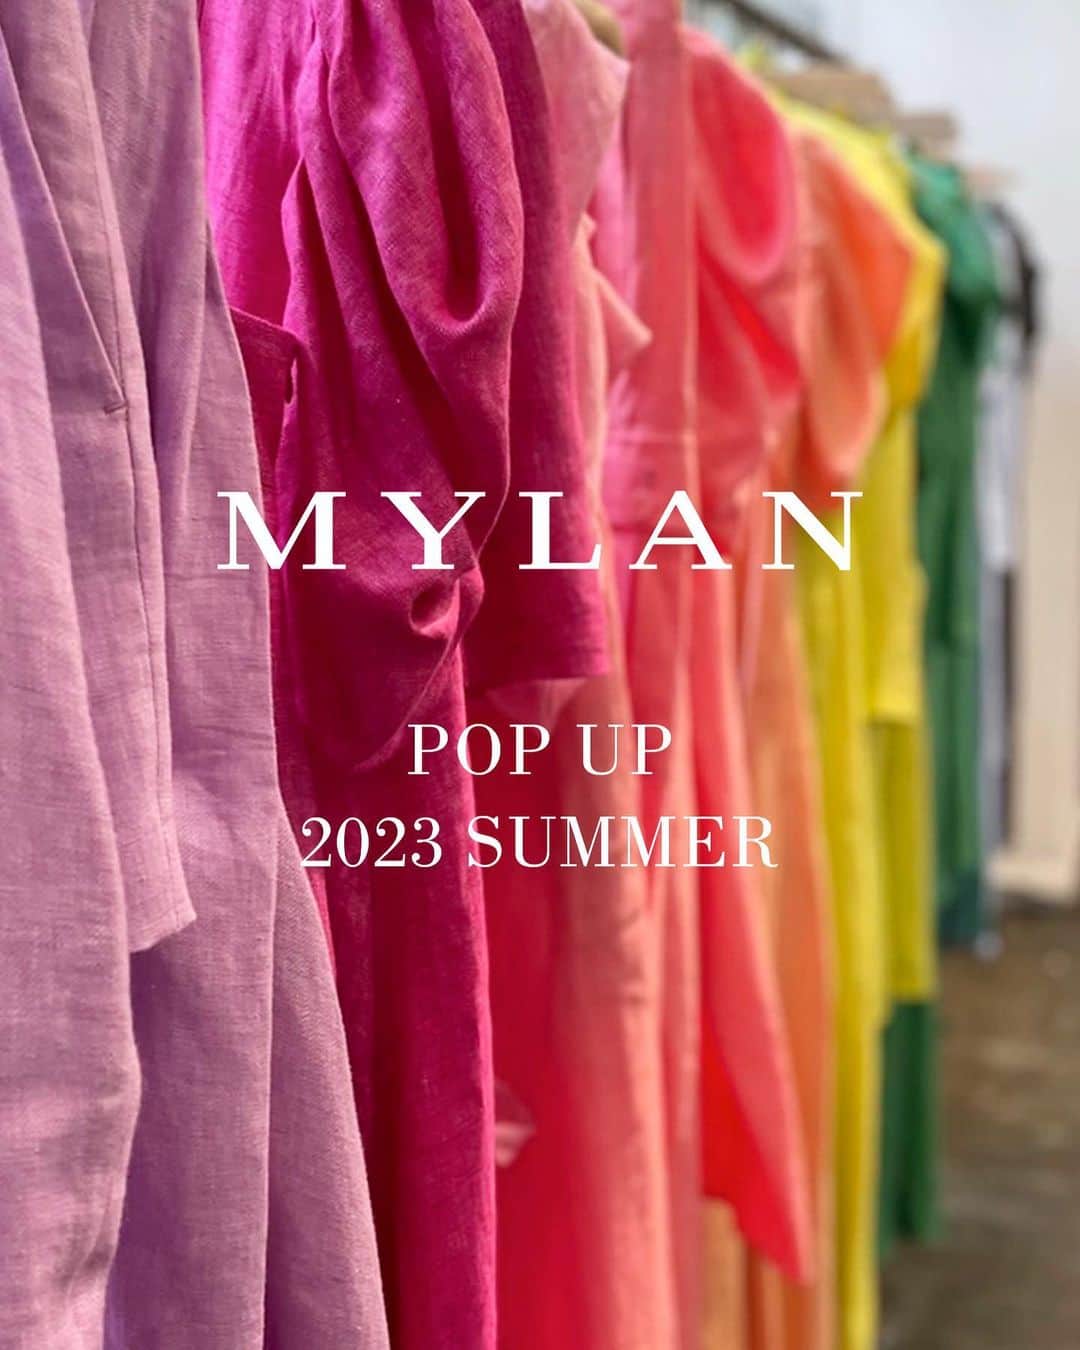 佐々木敬子のインスタグラム：「. お知らせ❤️❤️❤️ MYLAN 2023 SUMMER  POP UP STORE  今シーズンも華やかに夏を彩る、MYLANならではの鮮やかな発色とディテールにこだわった美しいフォルムのワンピースやスカートがラインナップ。 イタリア・パガニーニ社のハイクオリティなリネンをはじめ、さらりとしたドライな質感が素肌に心地よいライトリネンまで取り揃えたリネンコレクションは、初登場のテーラードジャケットやショートパンツまで幅広いアイテムを展開。新鮮なボーダー柄を含む上質のコットンジャージ素材のコレクションや、オリジナルカラーで染め上げた美しいカラーが特徴のハイクオリティなシルクコットンコレクションなど、多数、取り揃えています。  MYLANのコレクションを実際にお試しいただける貴重な機会となっております。お近くにいらっしゃる際は是非お立ち寄りくださいませ。  ■伊勢丹新宿店　本館2階■ 日程：7月26日（水）～8月5日（土） 住所：新宿区新宿3-14-1 本館2階 アーバン・クローゼット 電話：03-3352-1111(大代表)  ■六本木伊勢丹サローネ　1階■ 日程：8月9日（水）～22日（火） 住所：東京都港区赤坂9-7-4 東京ミッドタウン・ガレリア1F 電話：03-6434-7975(直通)  ※在庫状況などは直接店舗へご確認頂きますようお願い致します。  #MYLAN #MYLANpopup」